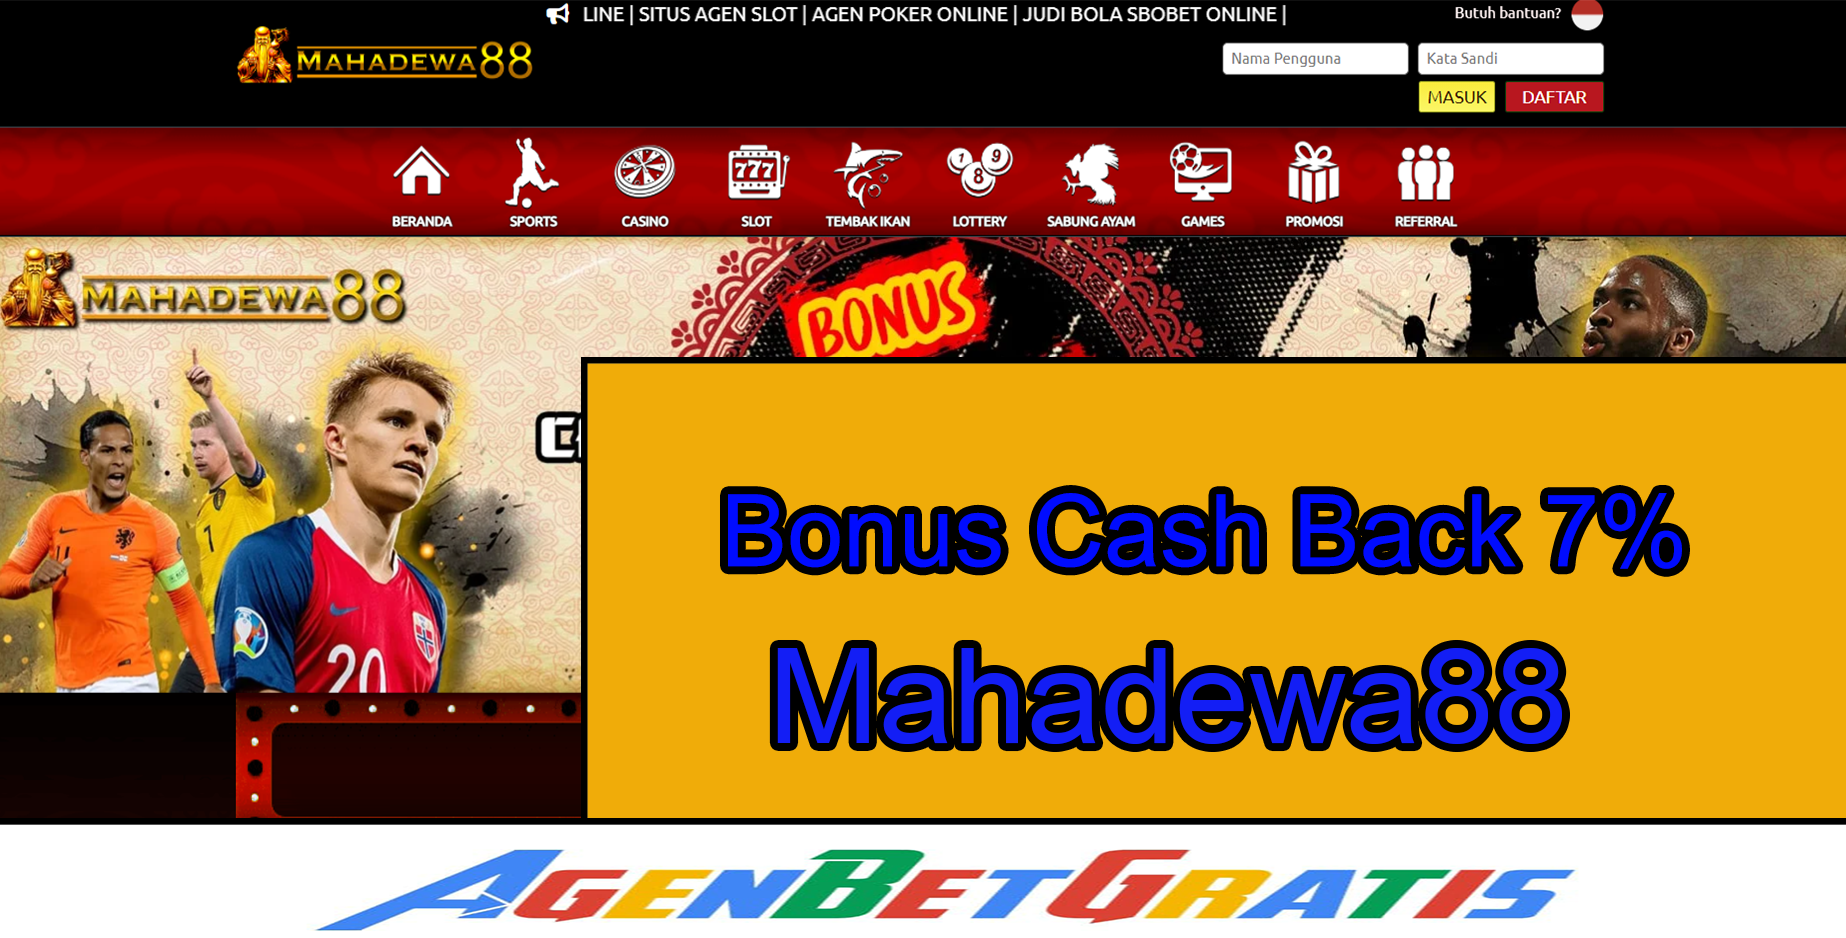 MAHADEWA88 - Bonus Freespin Beli 20%